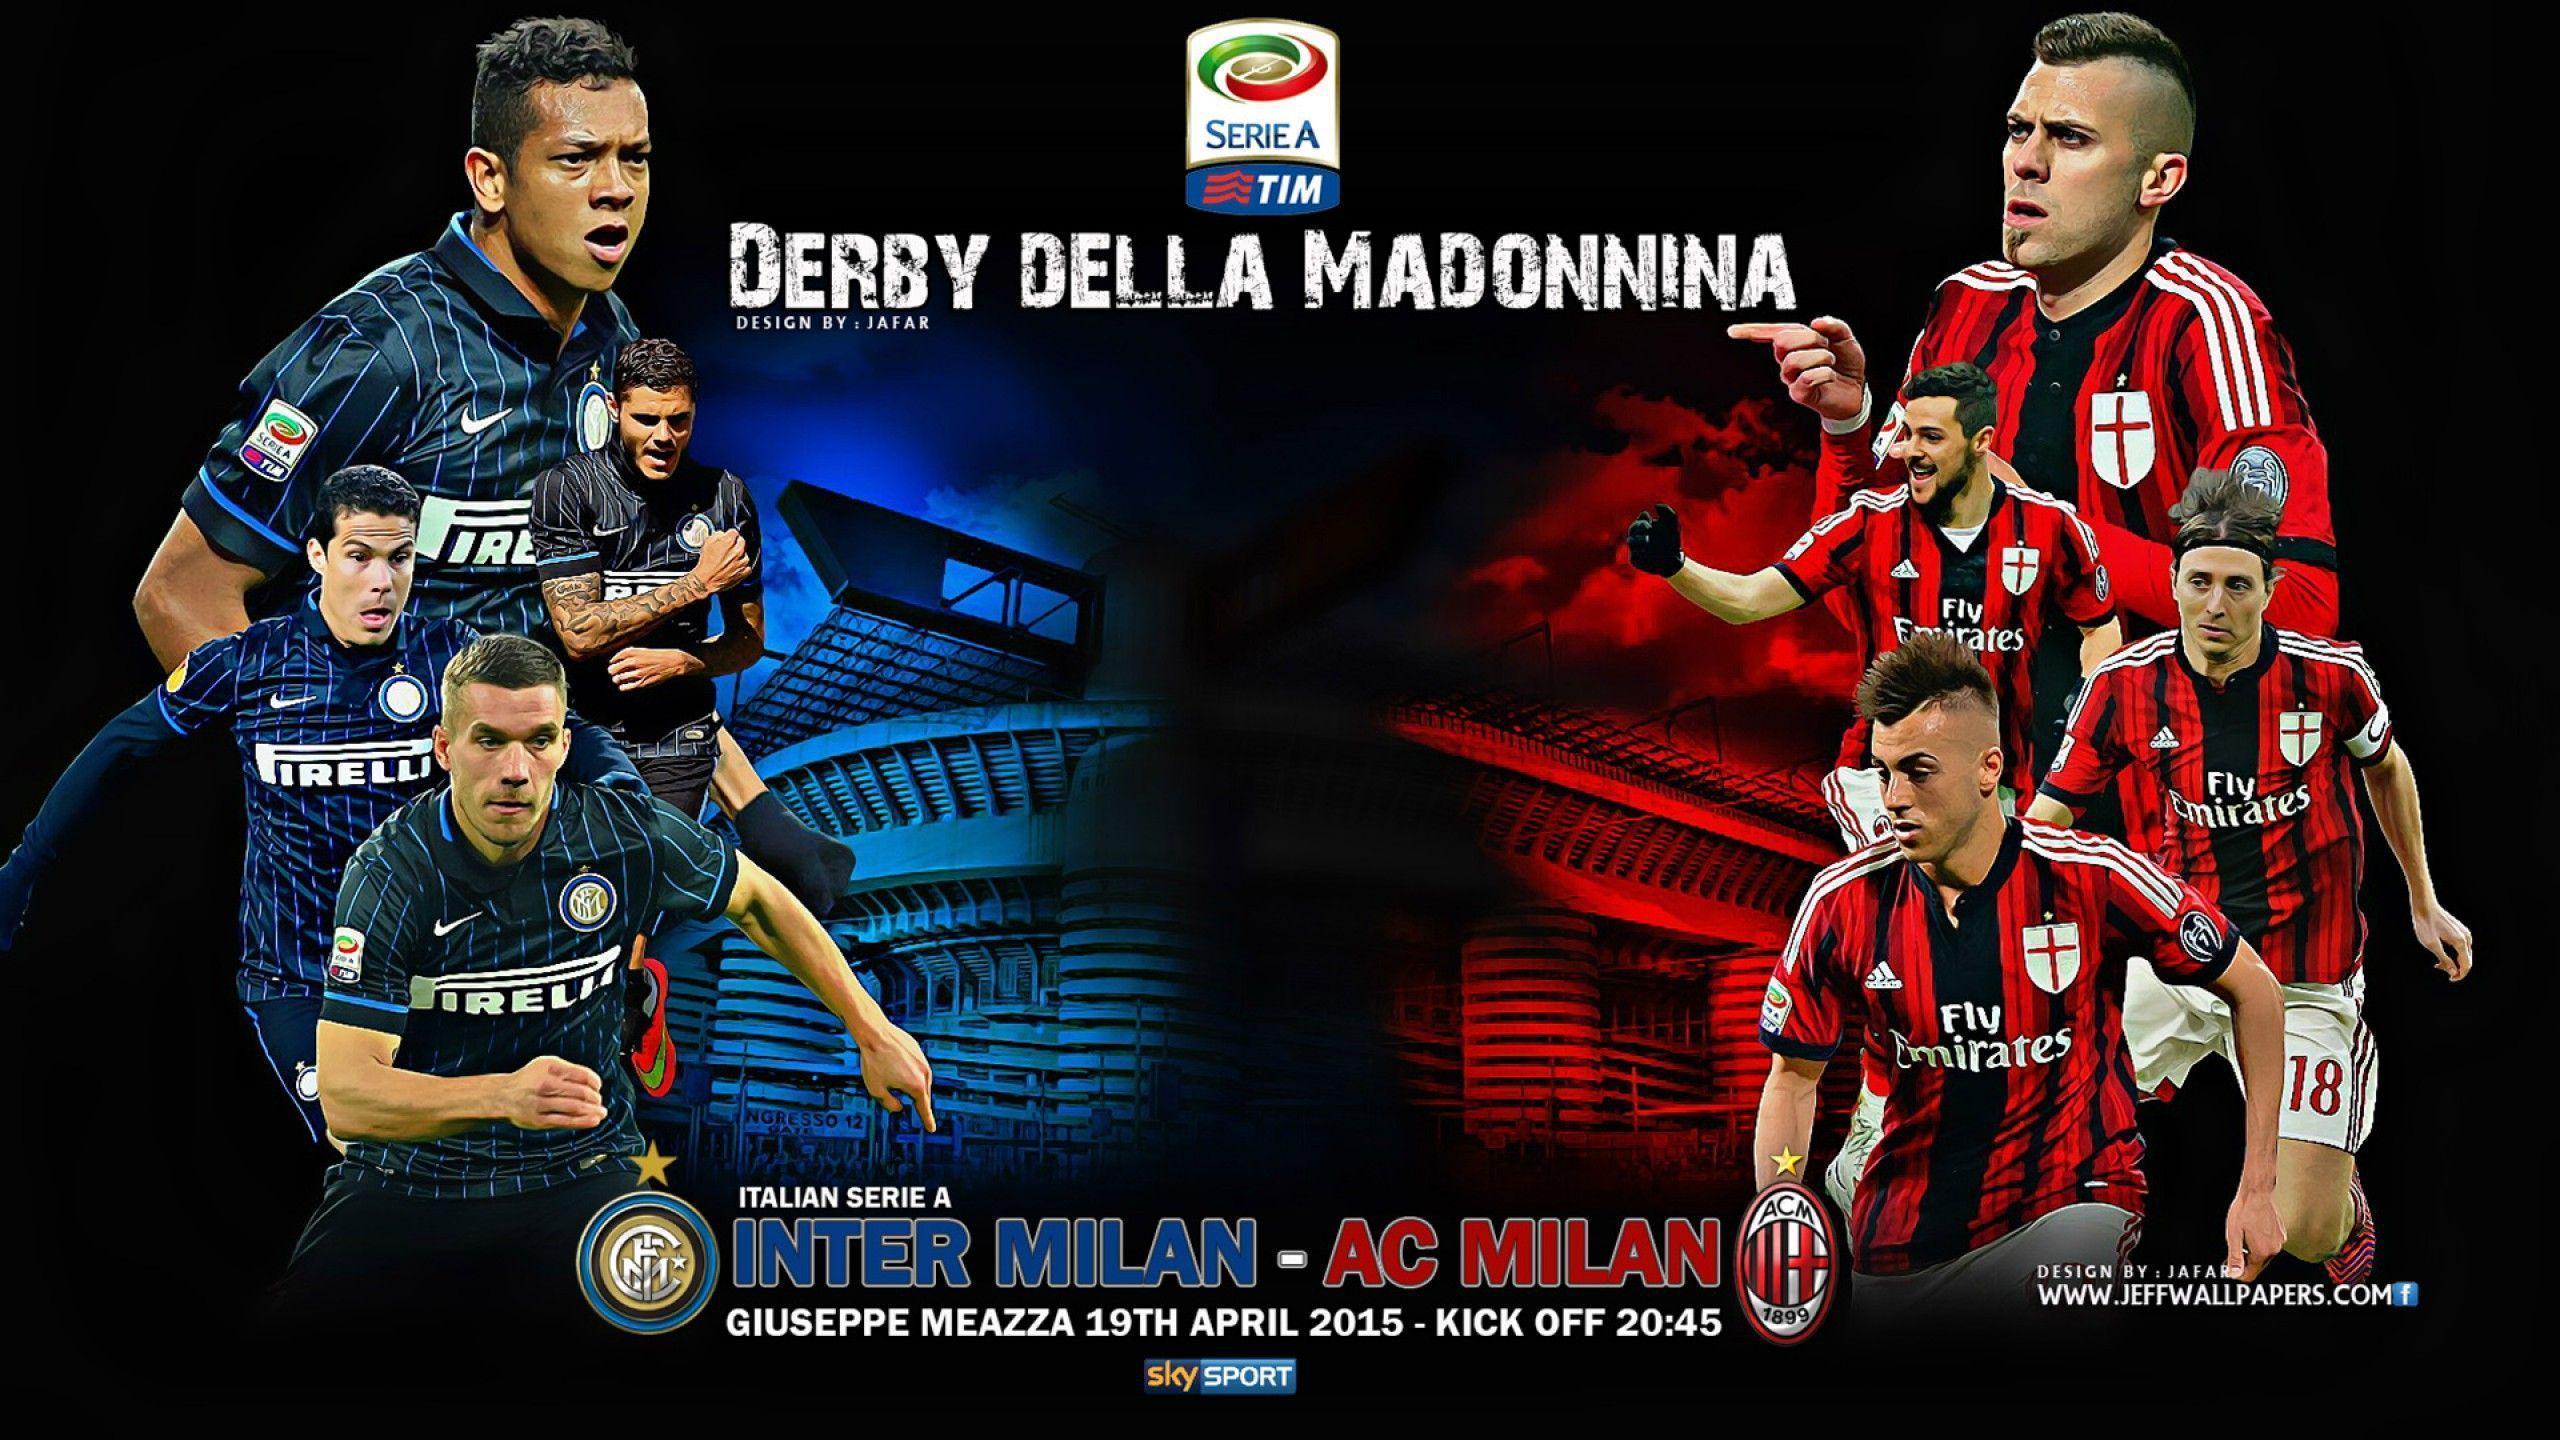 Download 2560x1440 Inter Milan vs AC Milan 2015 Derby Della